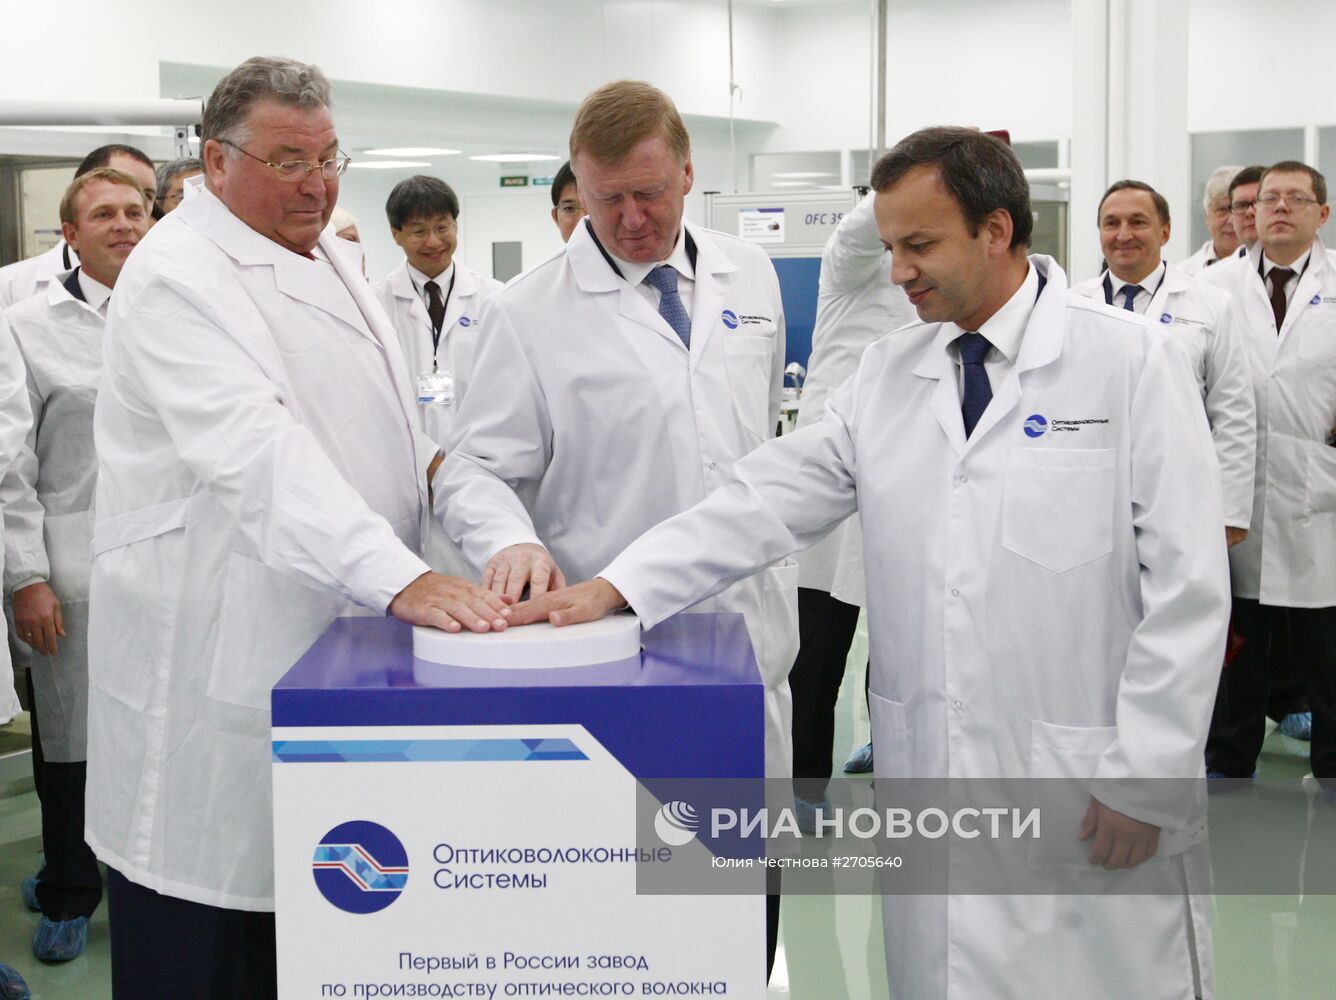 Открытие завода "Оптиковолоконные системы" в Саранске